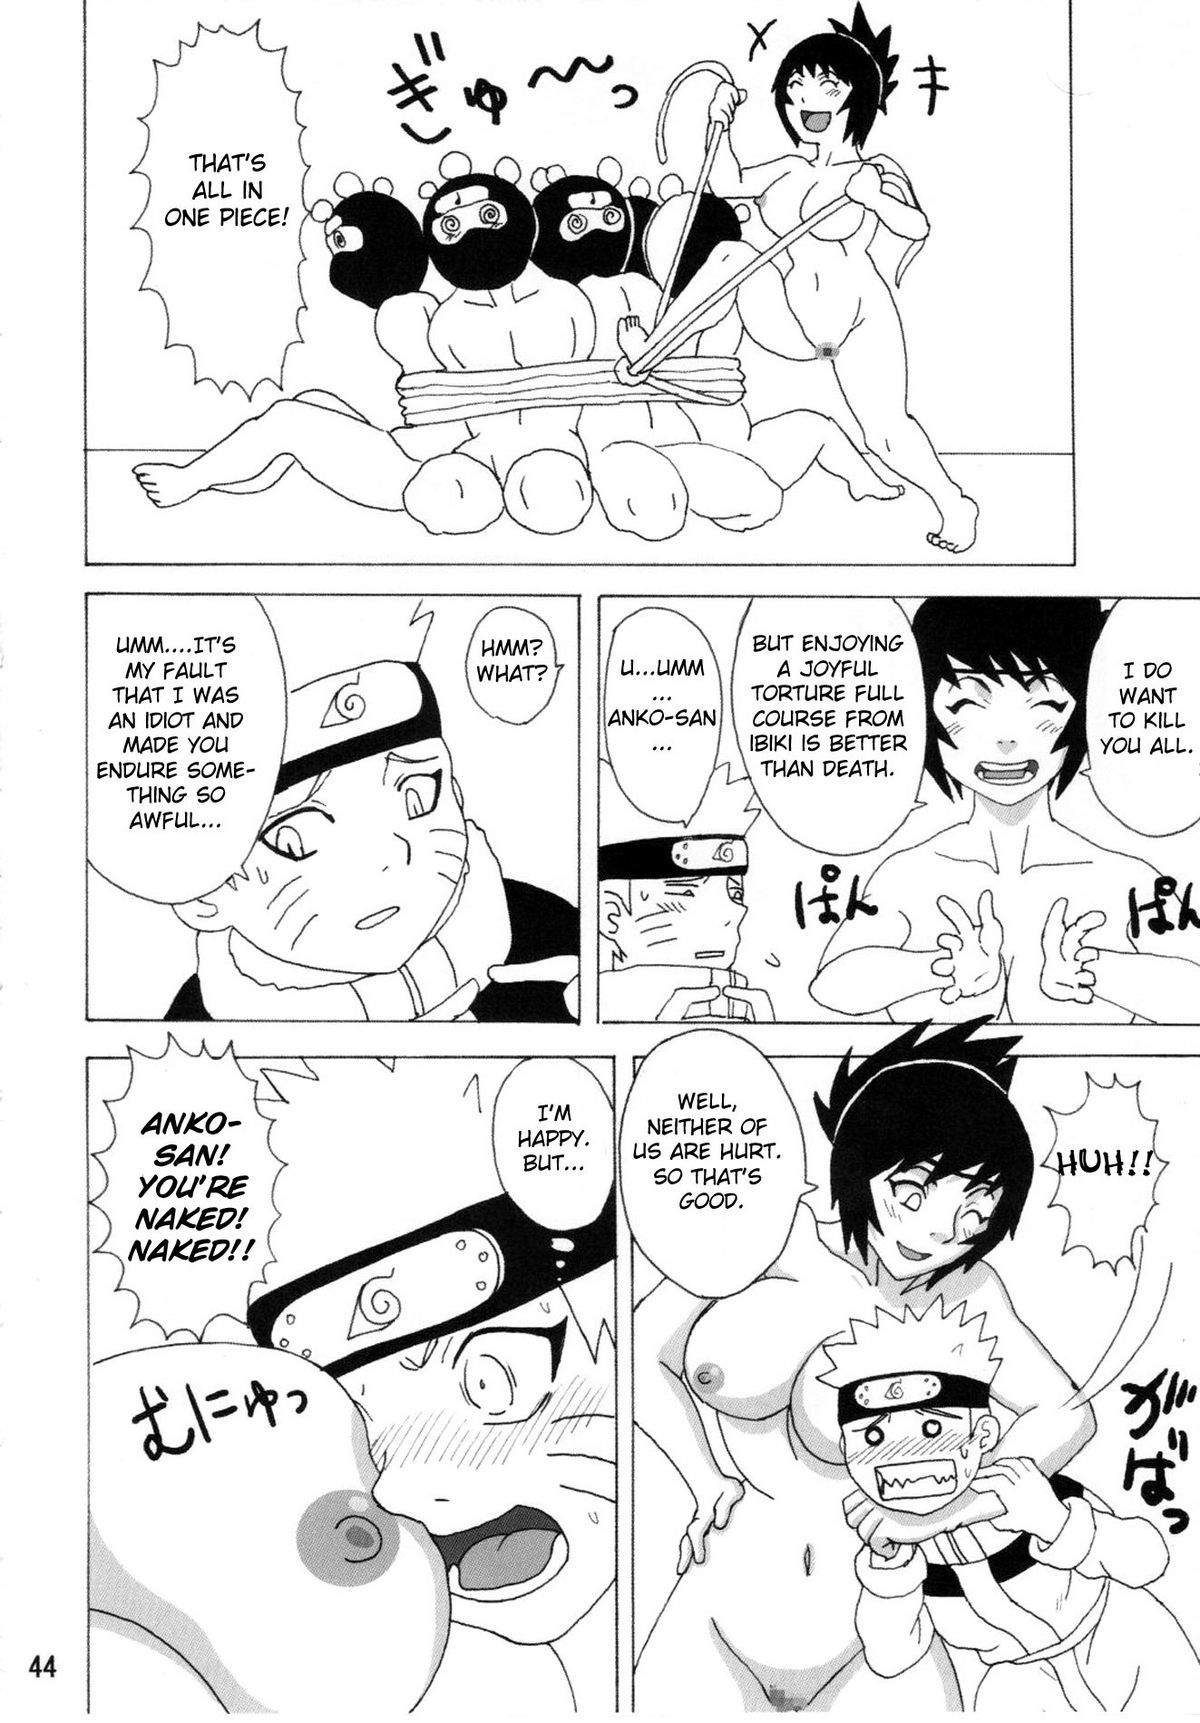 Mitarashi Anko Hon naruto 44 hentai manga